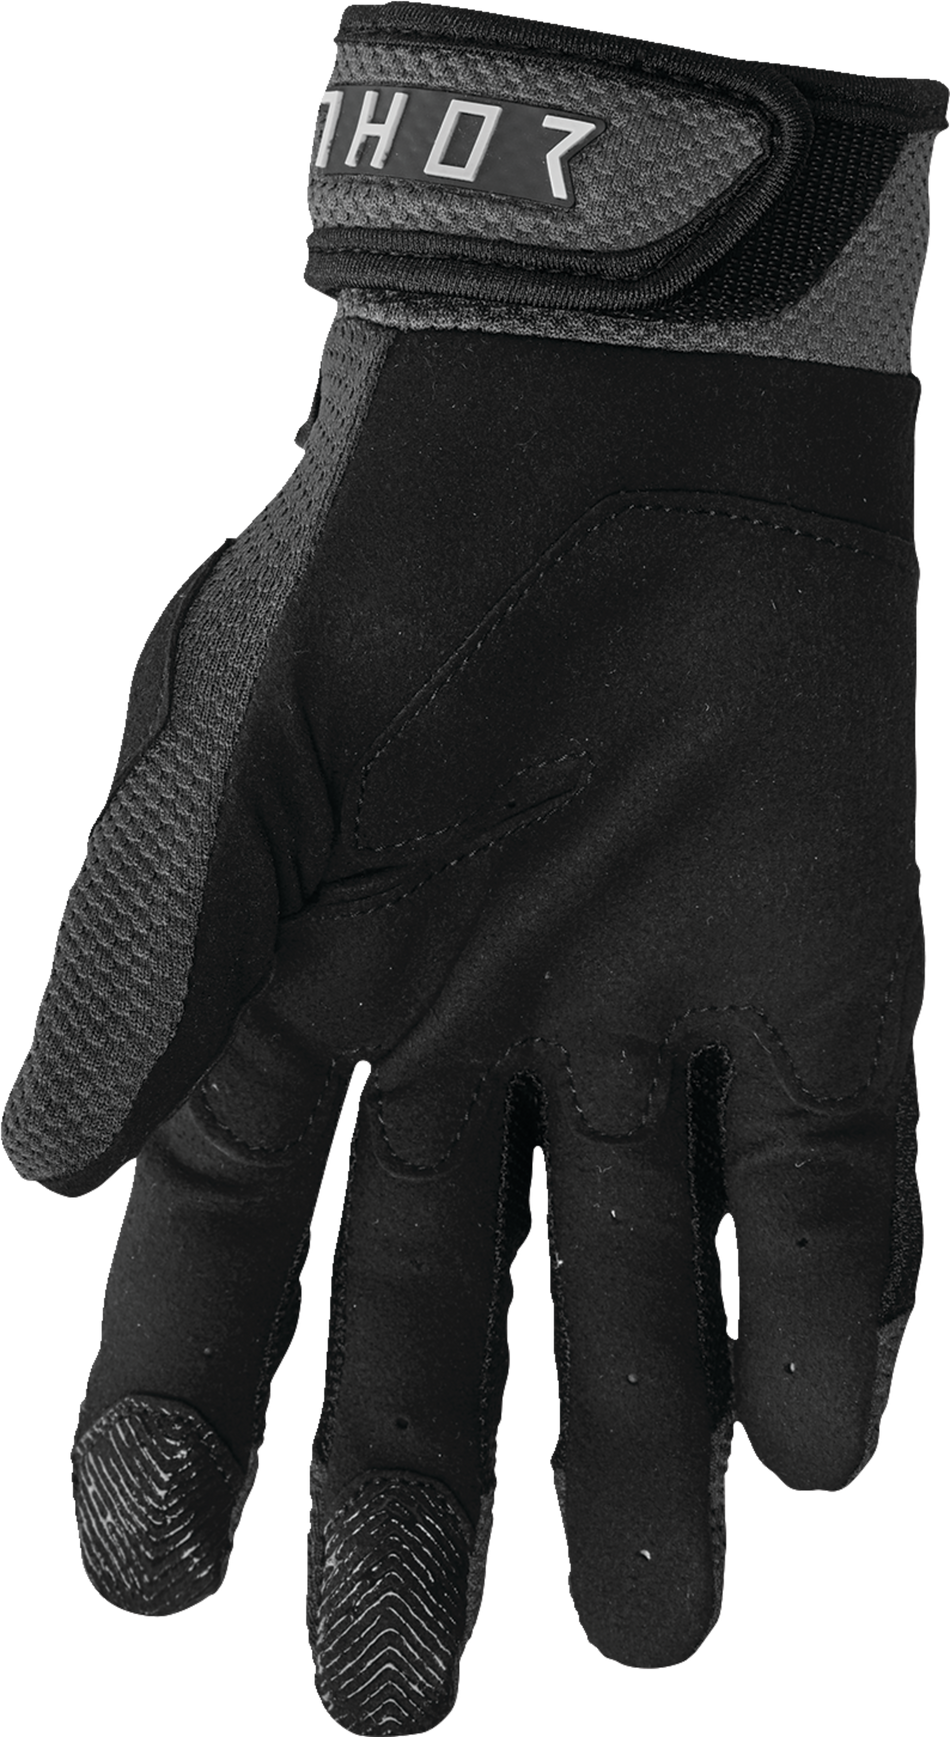 THOR Terrain Gloves - Black/Charcoal - XL 3330-7283